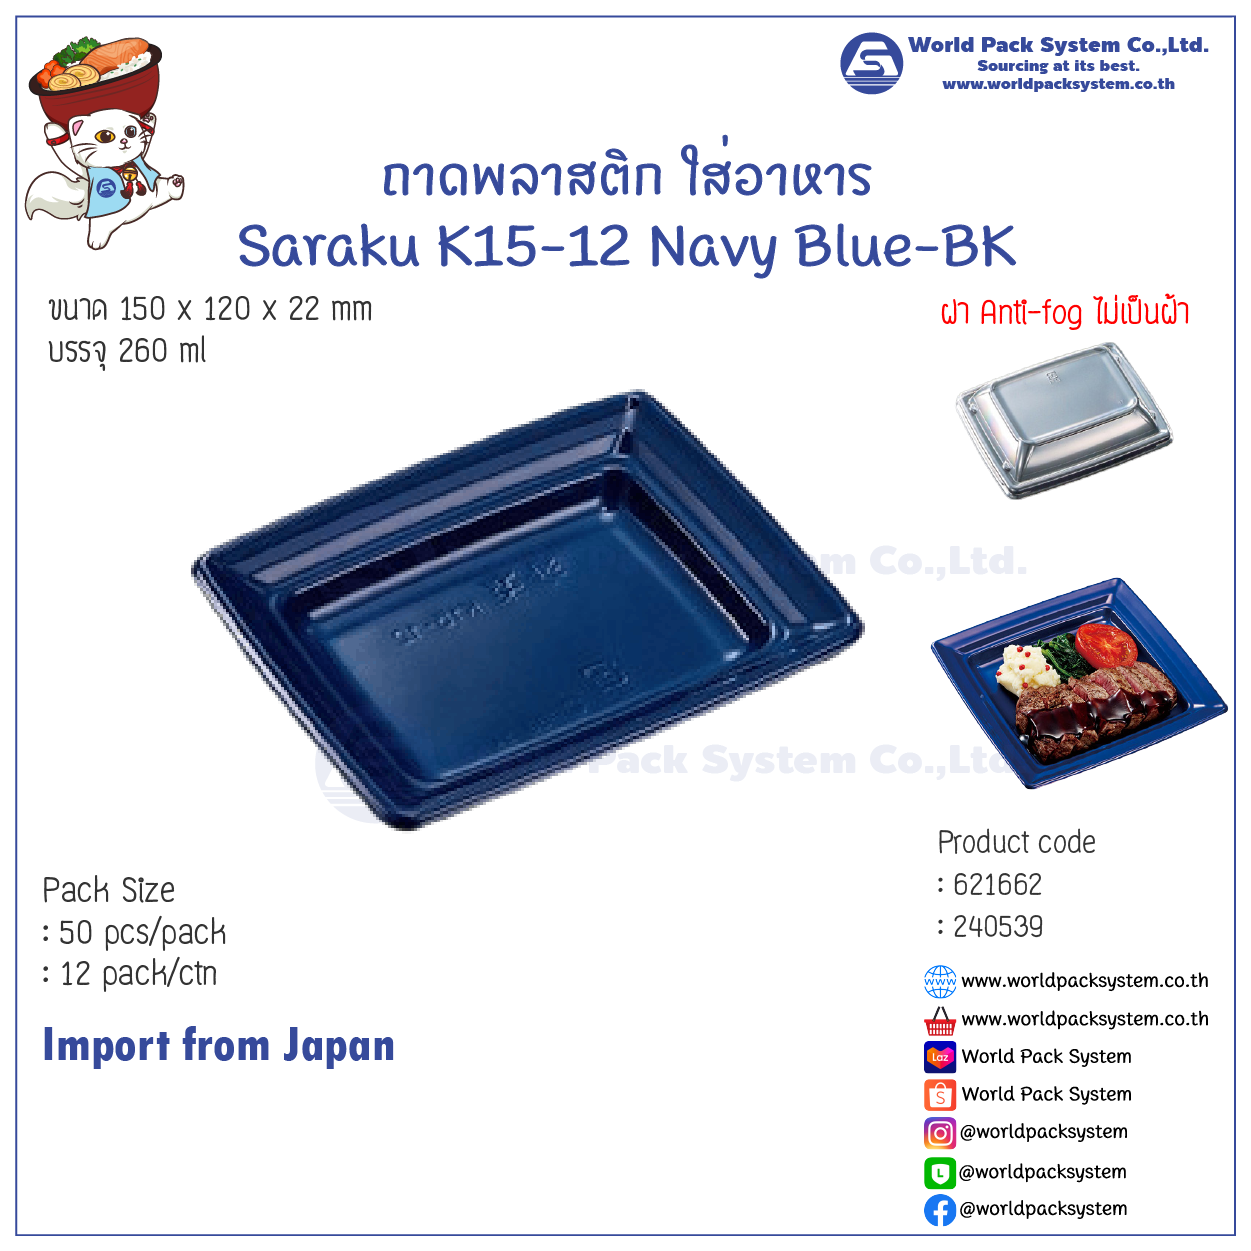 ถาดใส่อาหาร ถาดพลาสติก Saraku K15-12 Navy Blue-BK (50 ชุด)